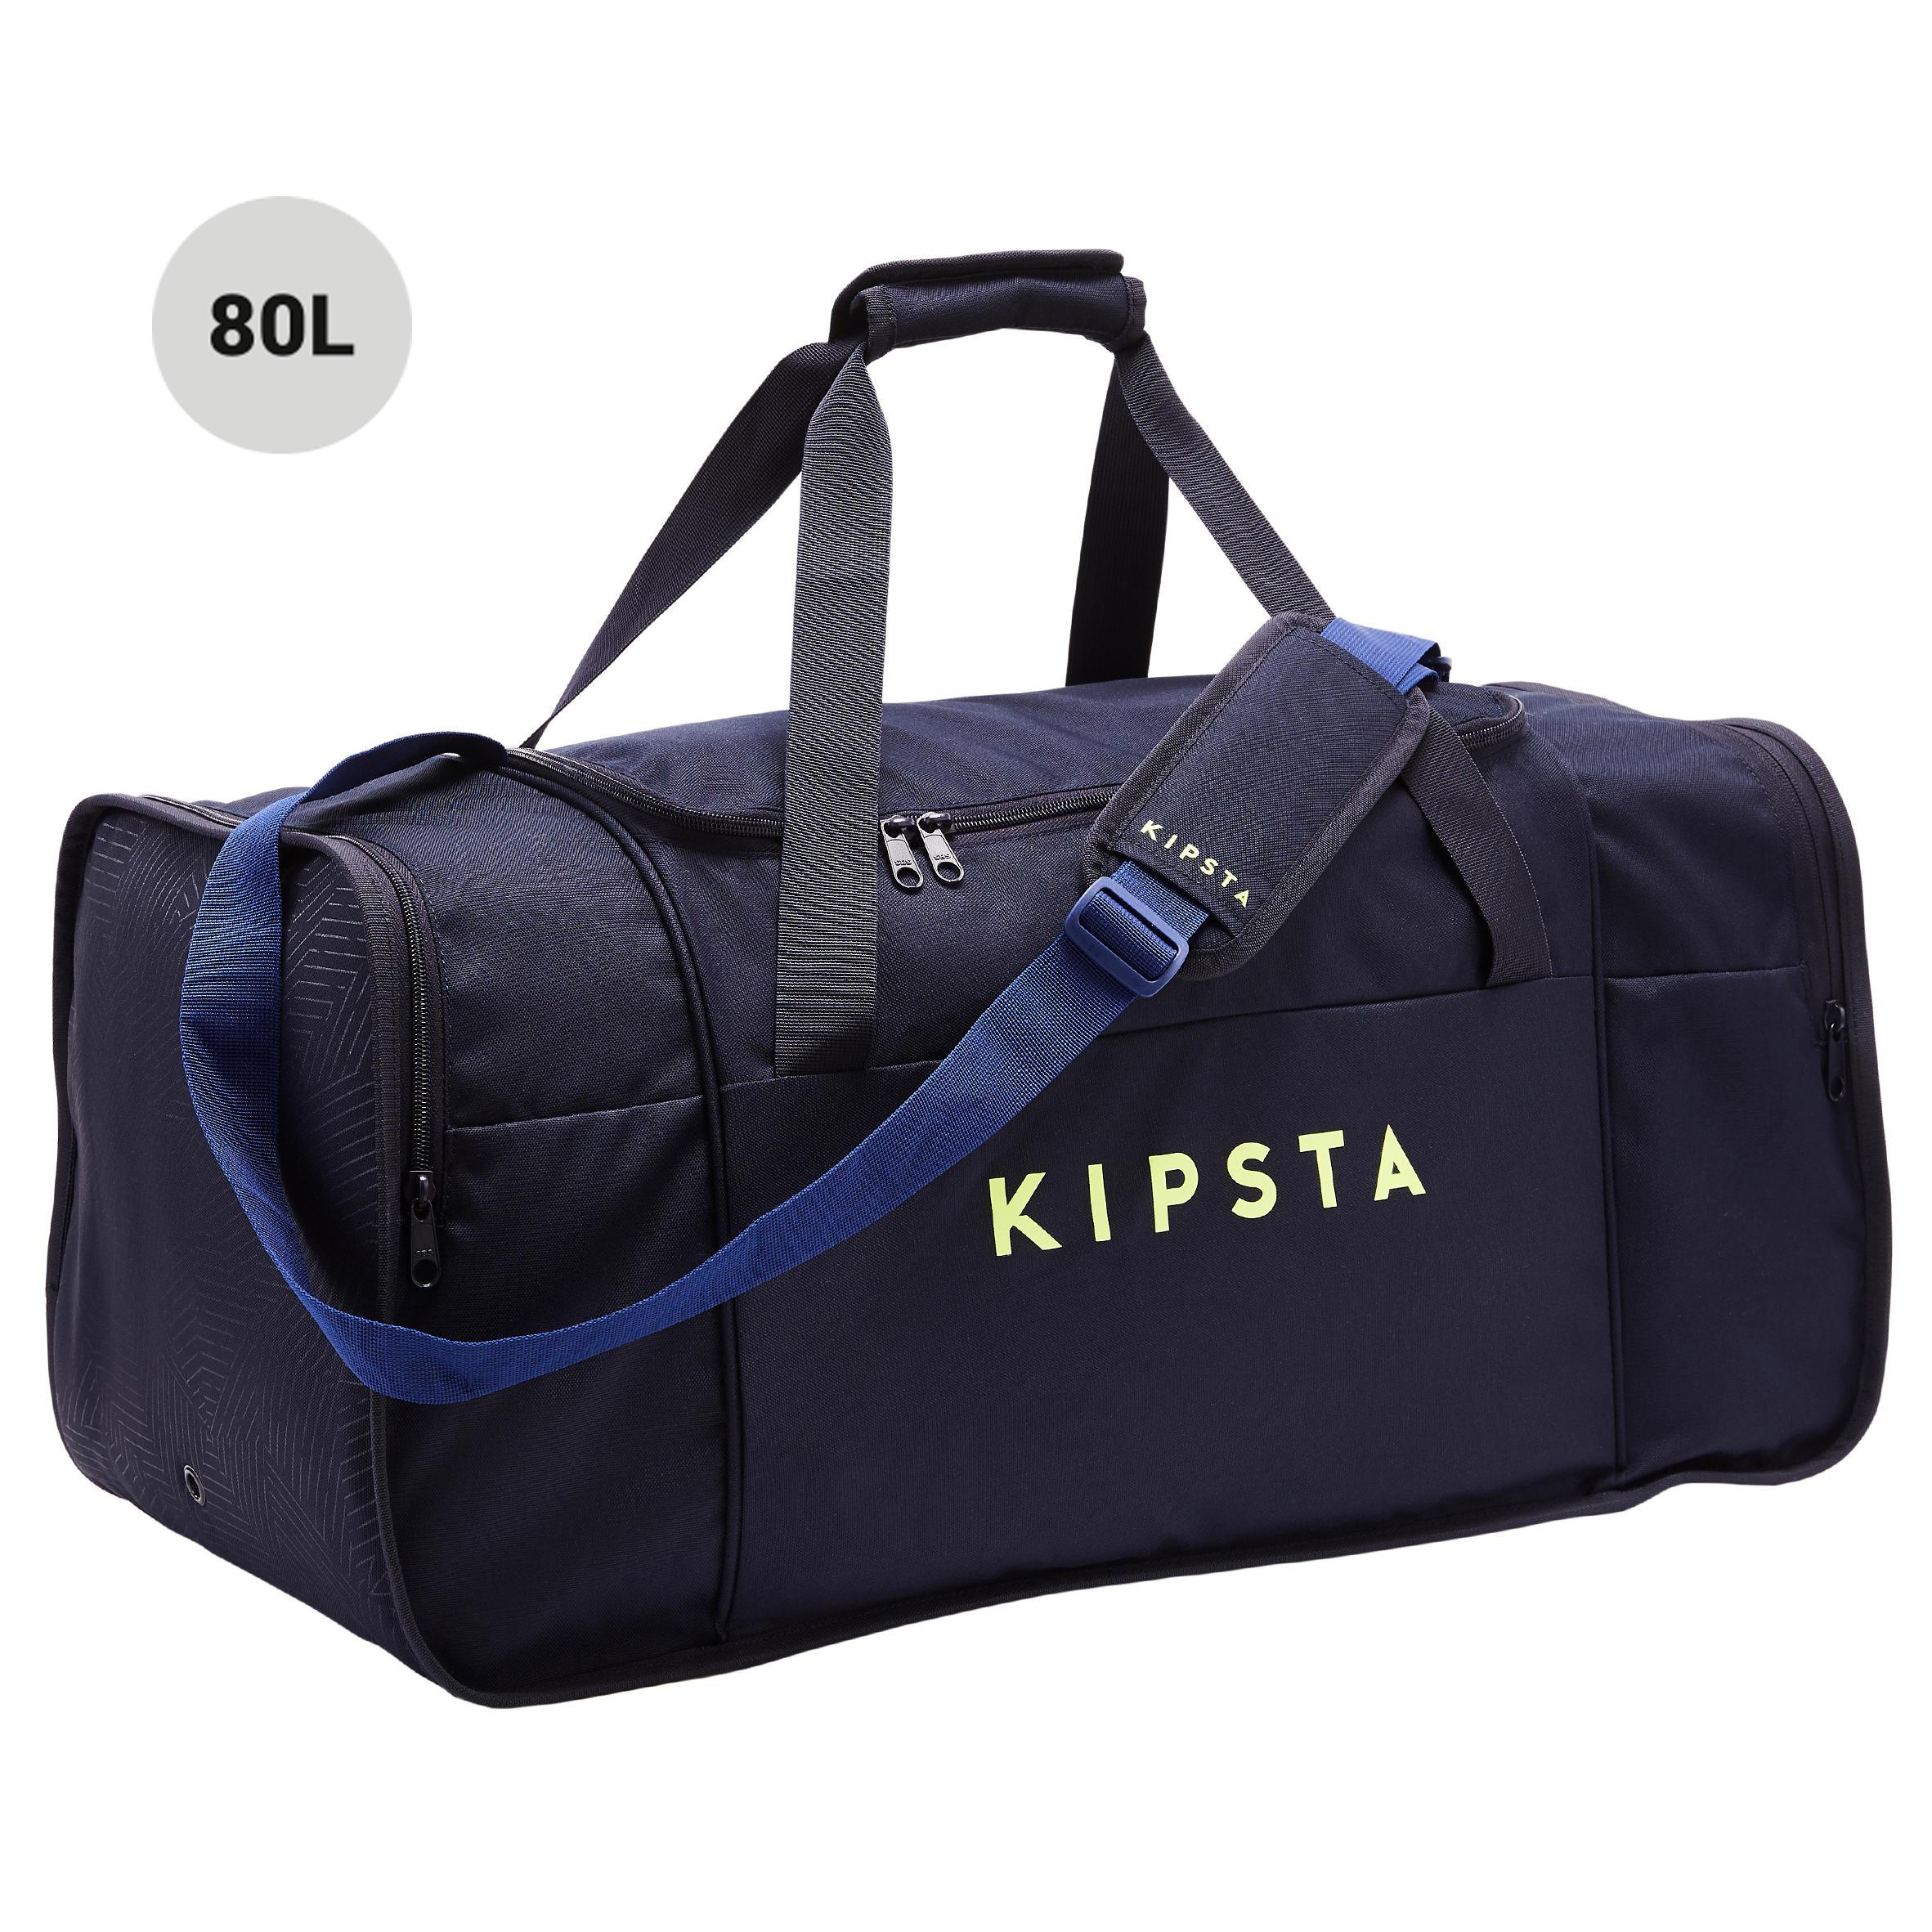 [ด่วน!! โปรโมชั่นมีจำนวนจำกัด] กระเป๋ากีฬารุ่น KIPOCKET ความจุ 80 ลิตร (สีน้ำเงิน/เหลือง) สำหรับ ฟุตบอล